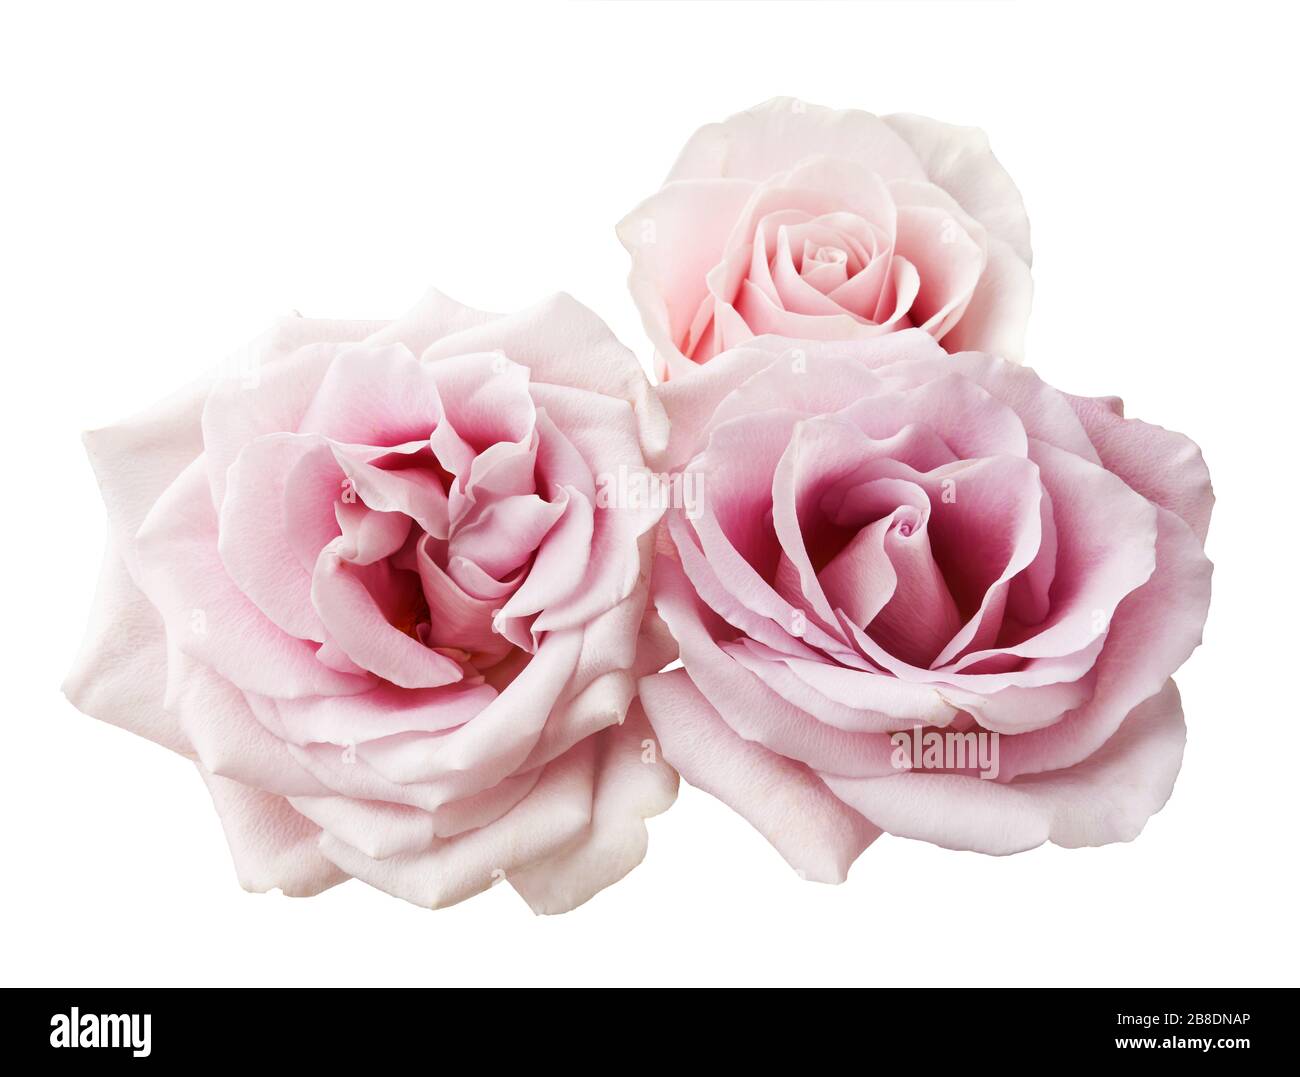 Drei rosafarbene Rosenblüten isoliert auf weißem Grund. Schöne Rose Filiale. Stockfoto